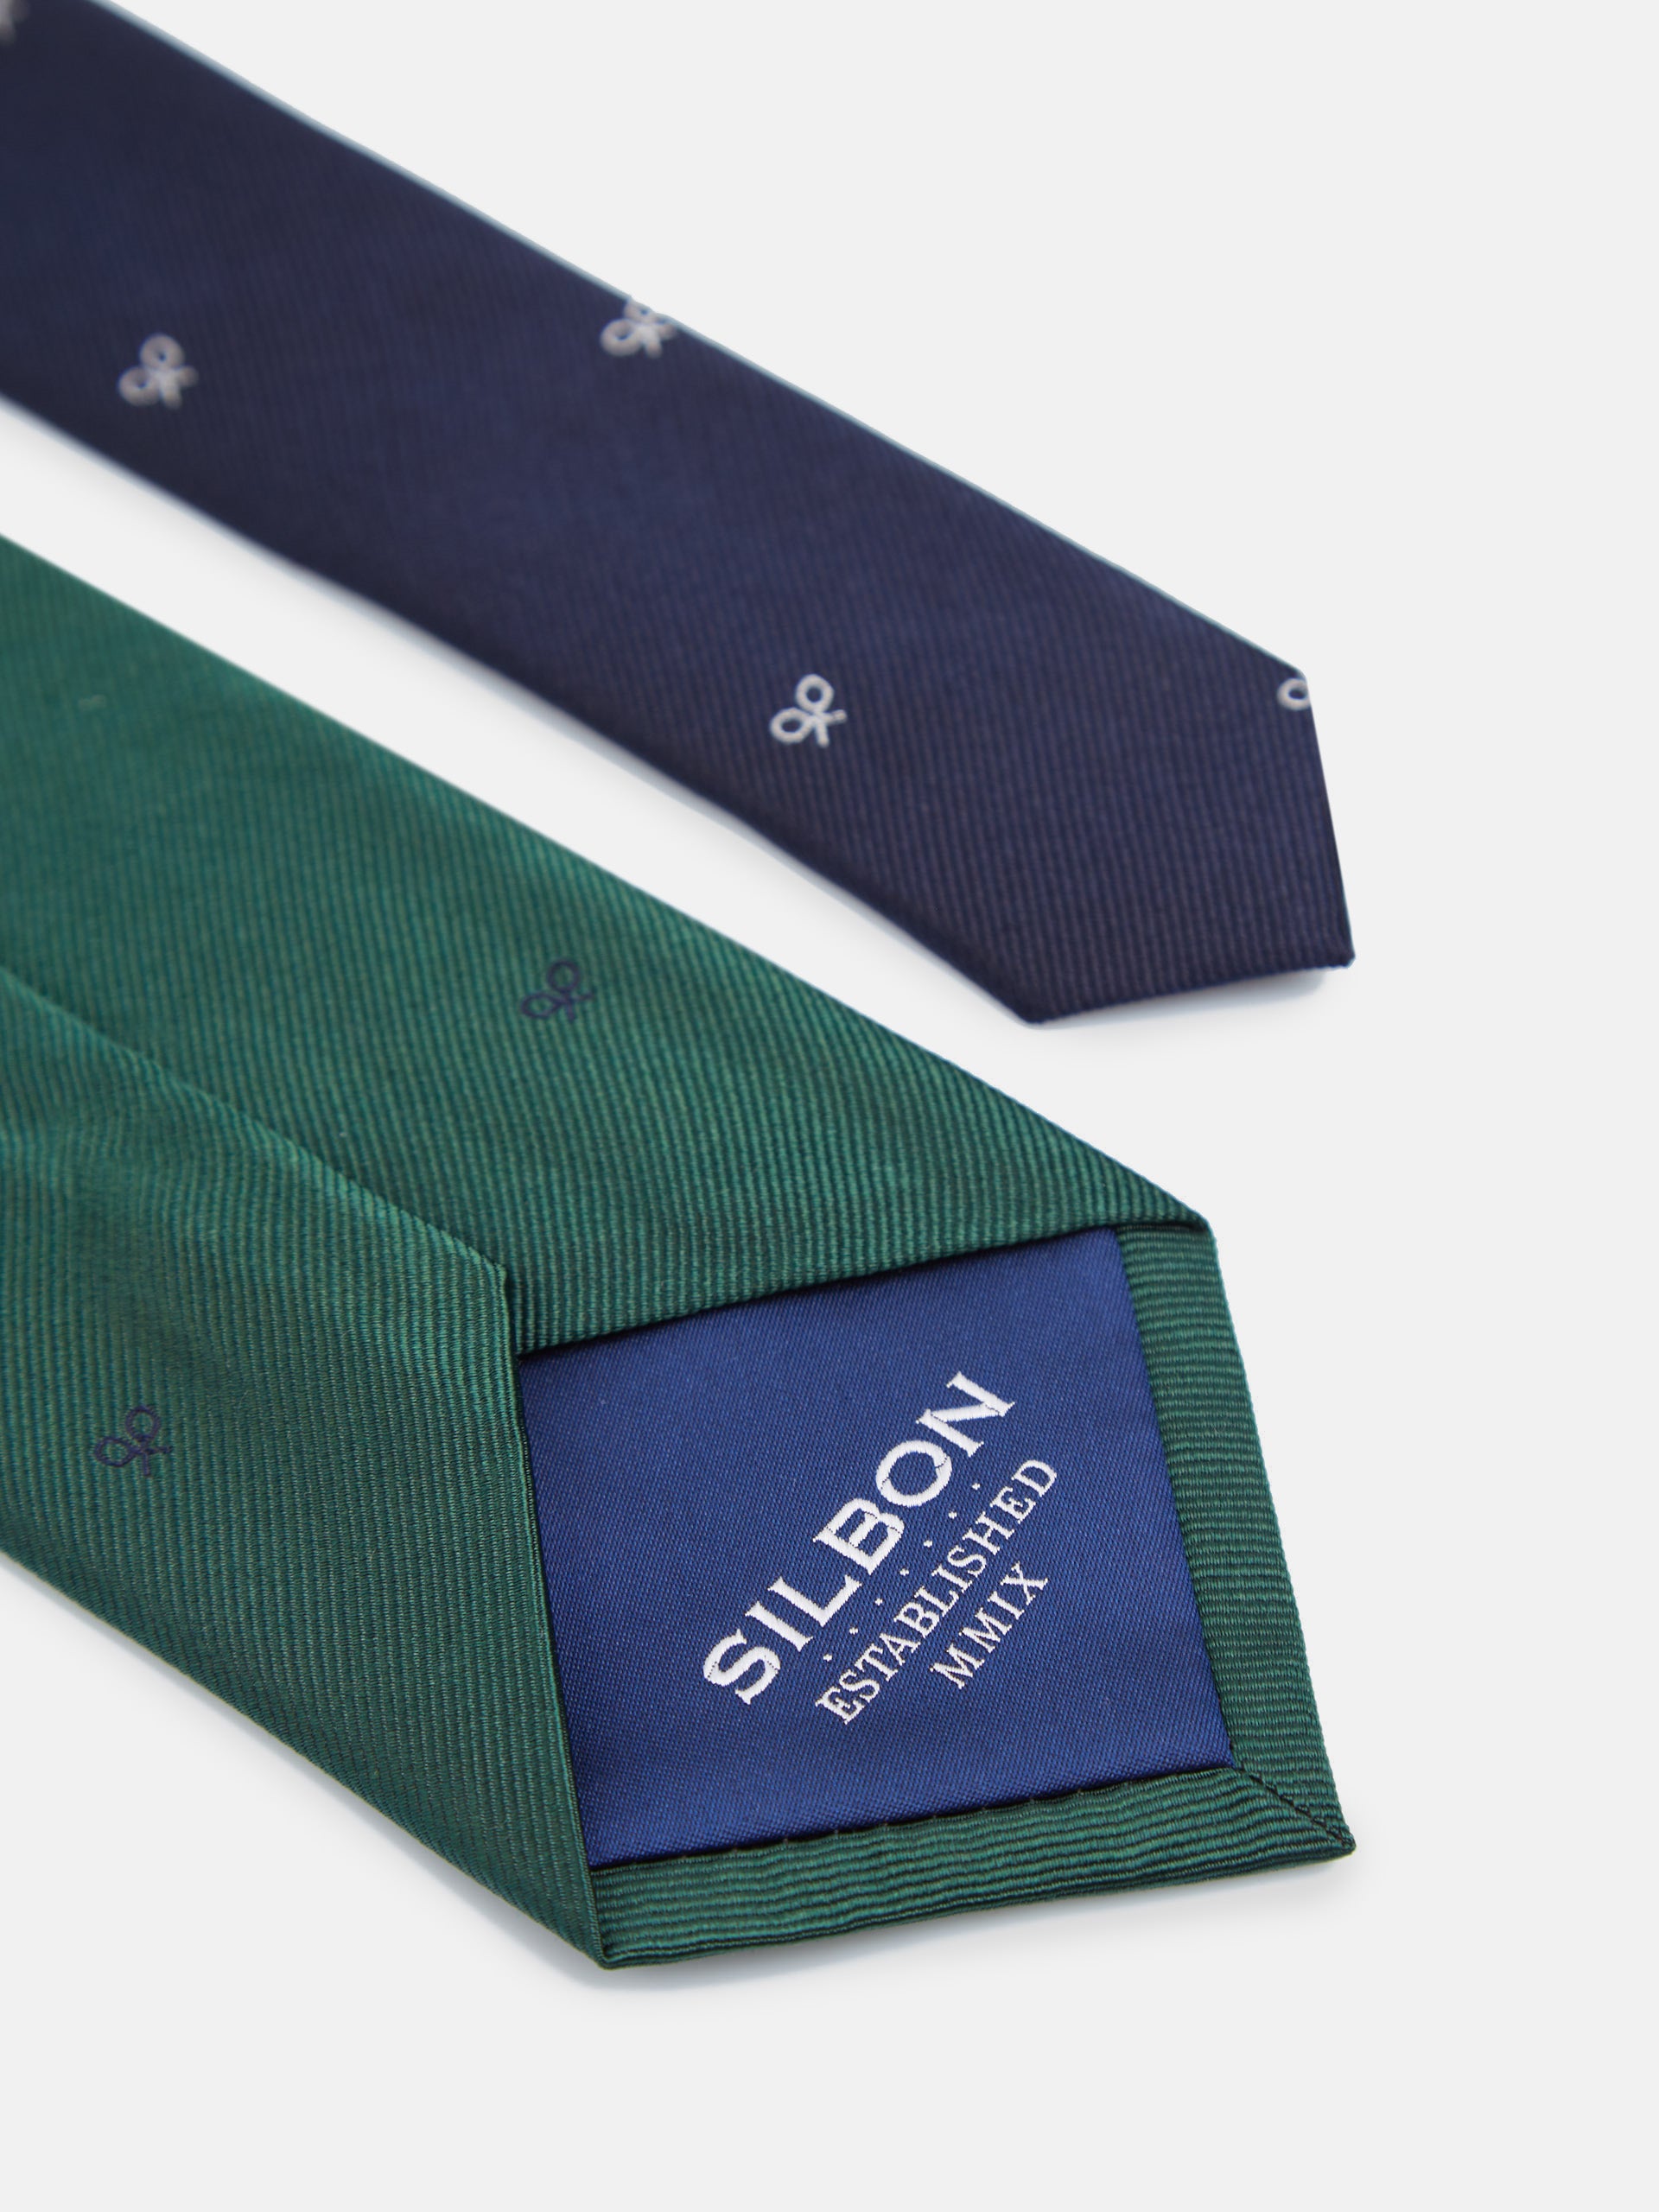 Cravate en silbon à motifs raquettes vertes